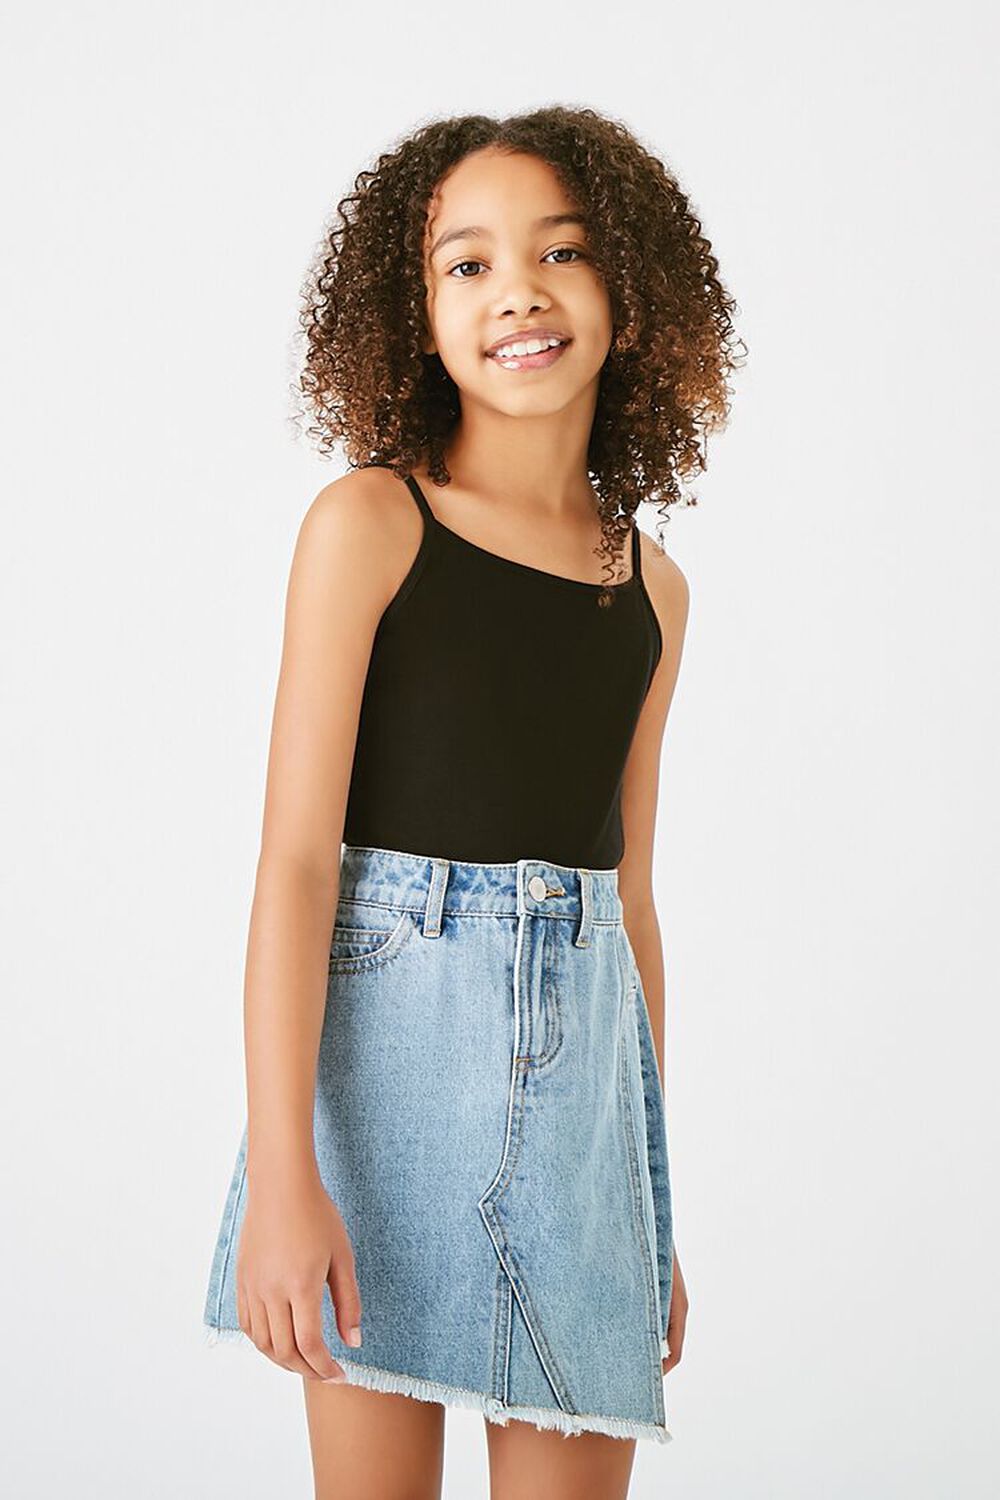 BLACK Girls Organically Grown Cotton Cami (Kids), image 1